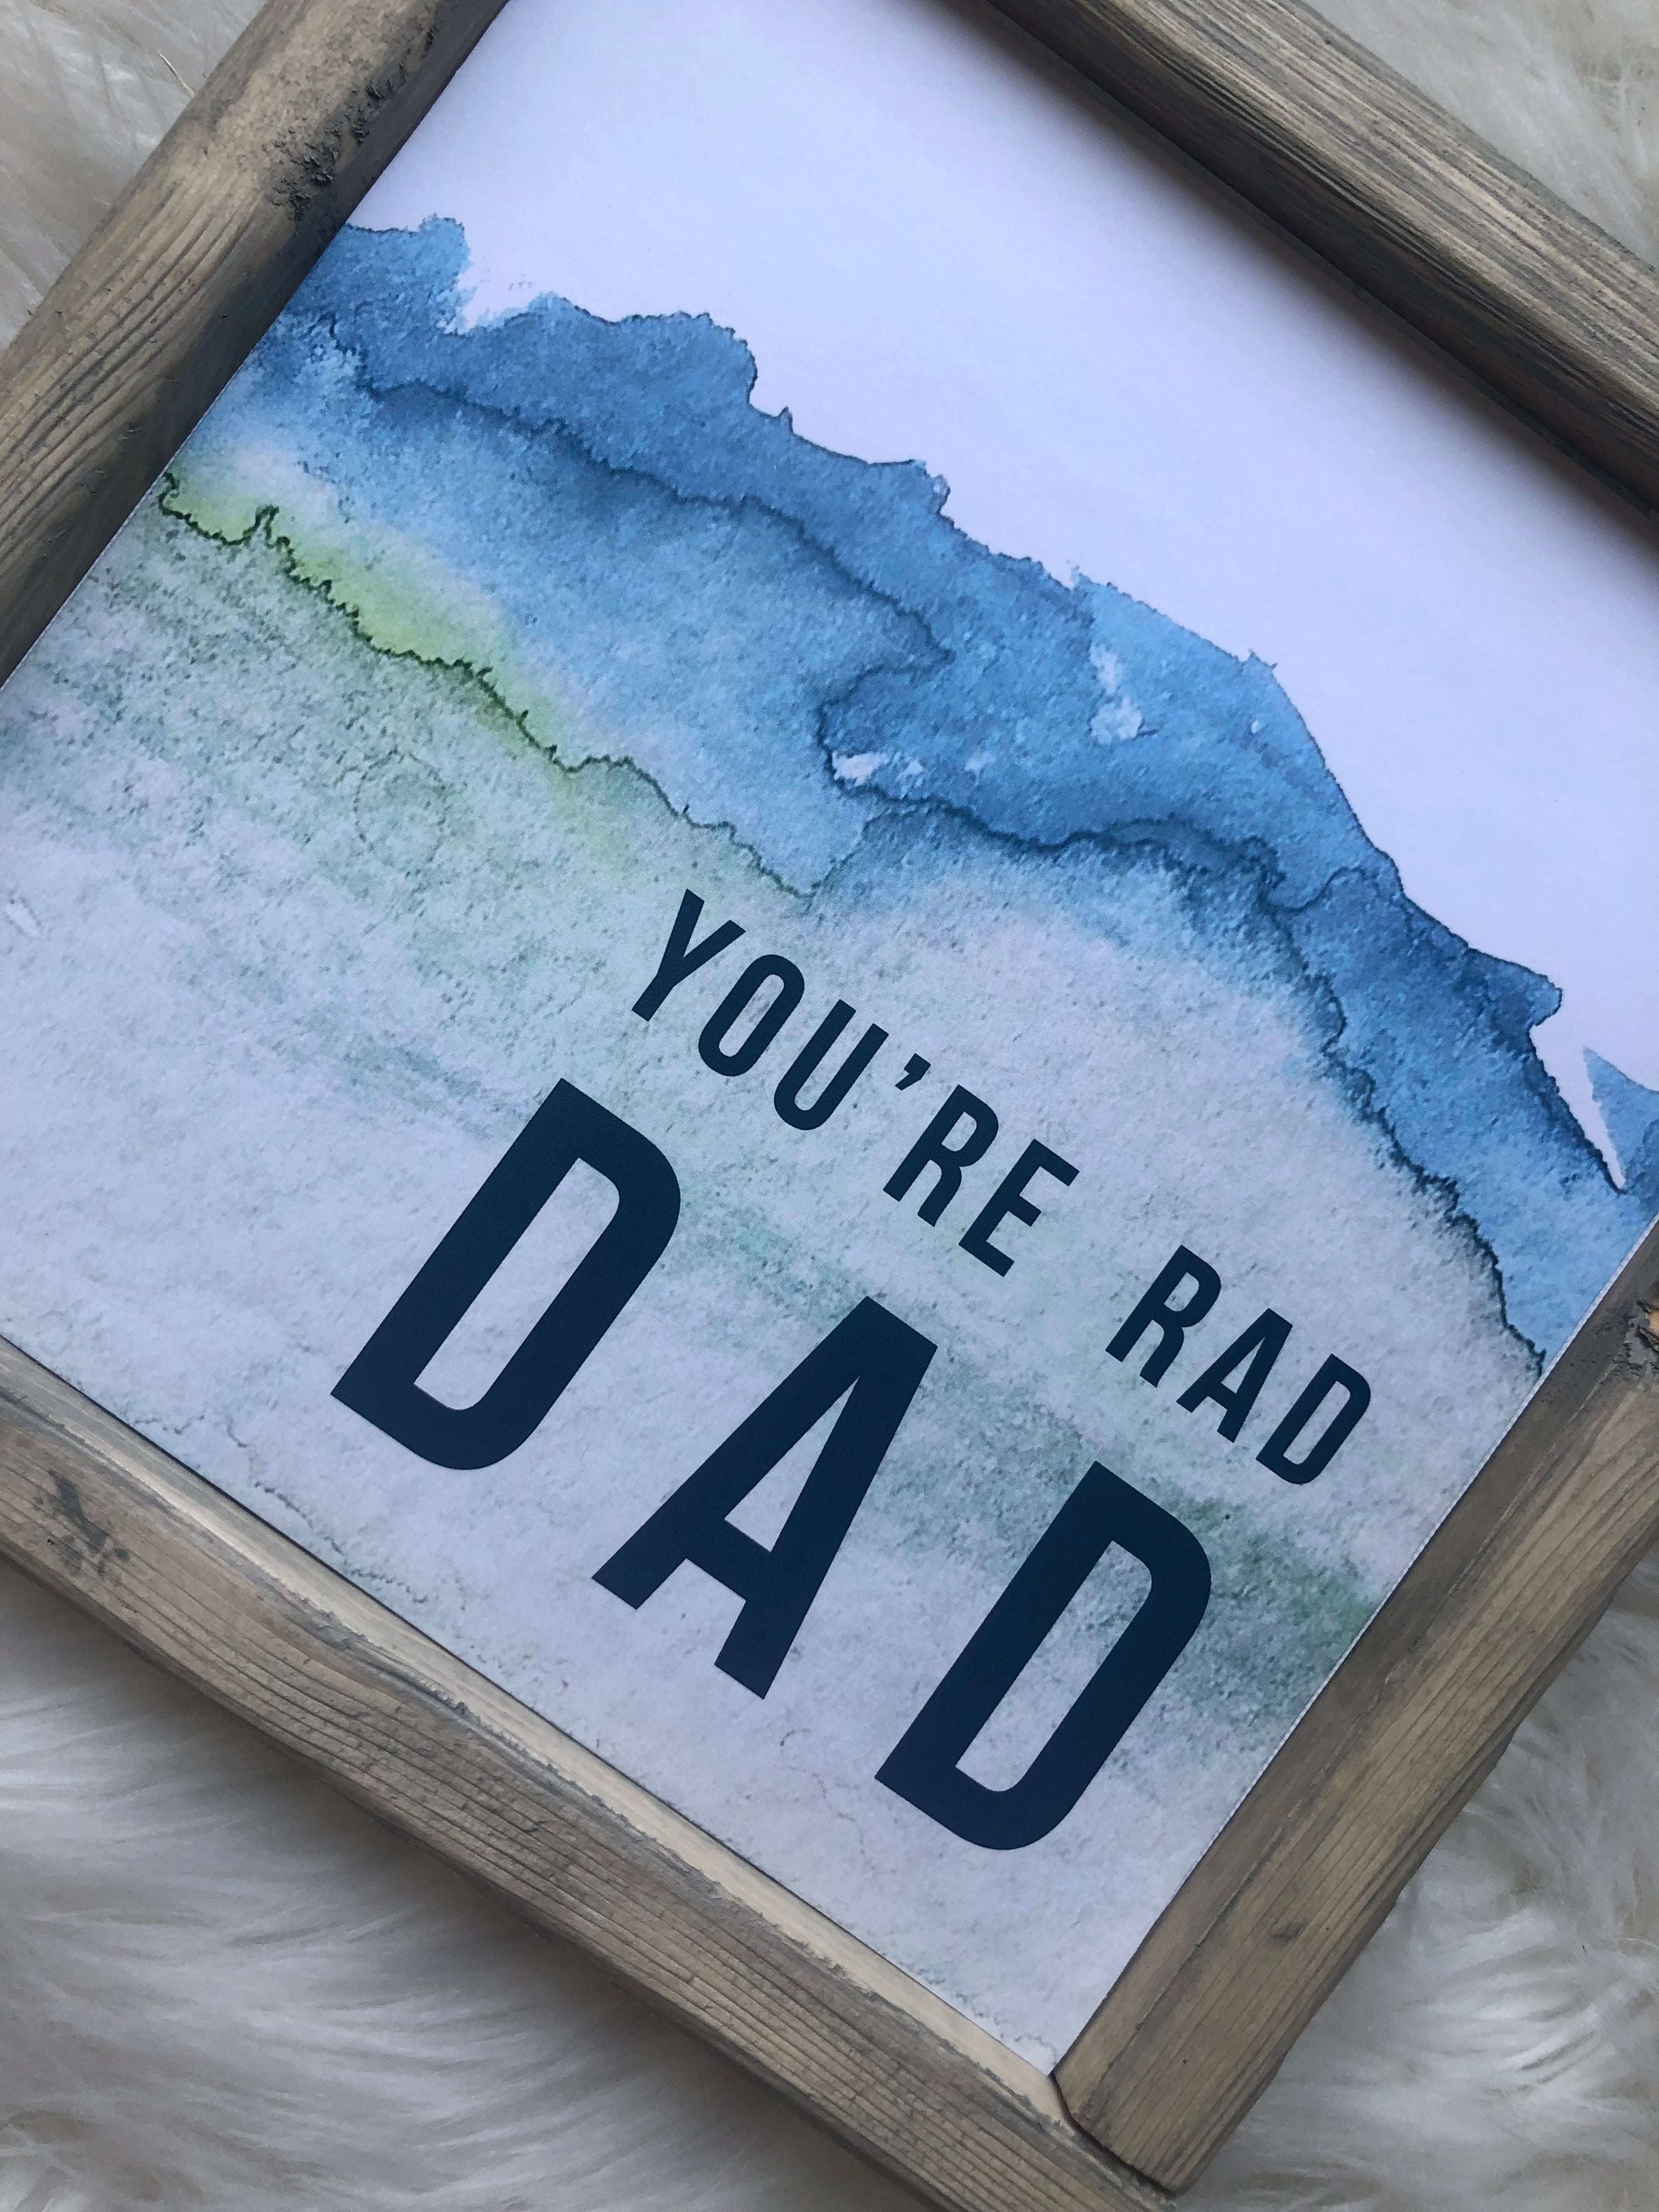 You’re Rad Dad